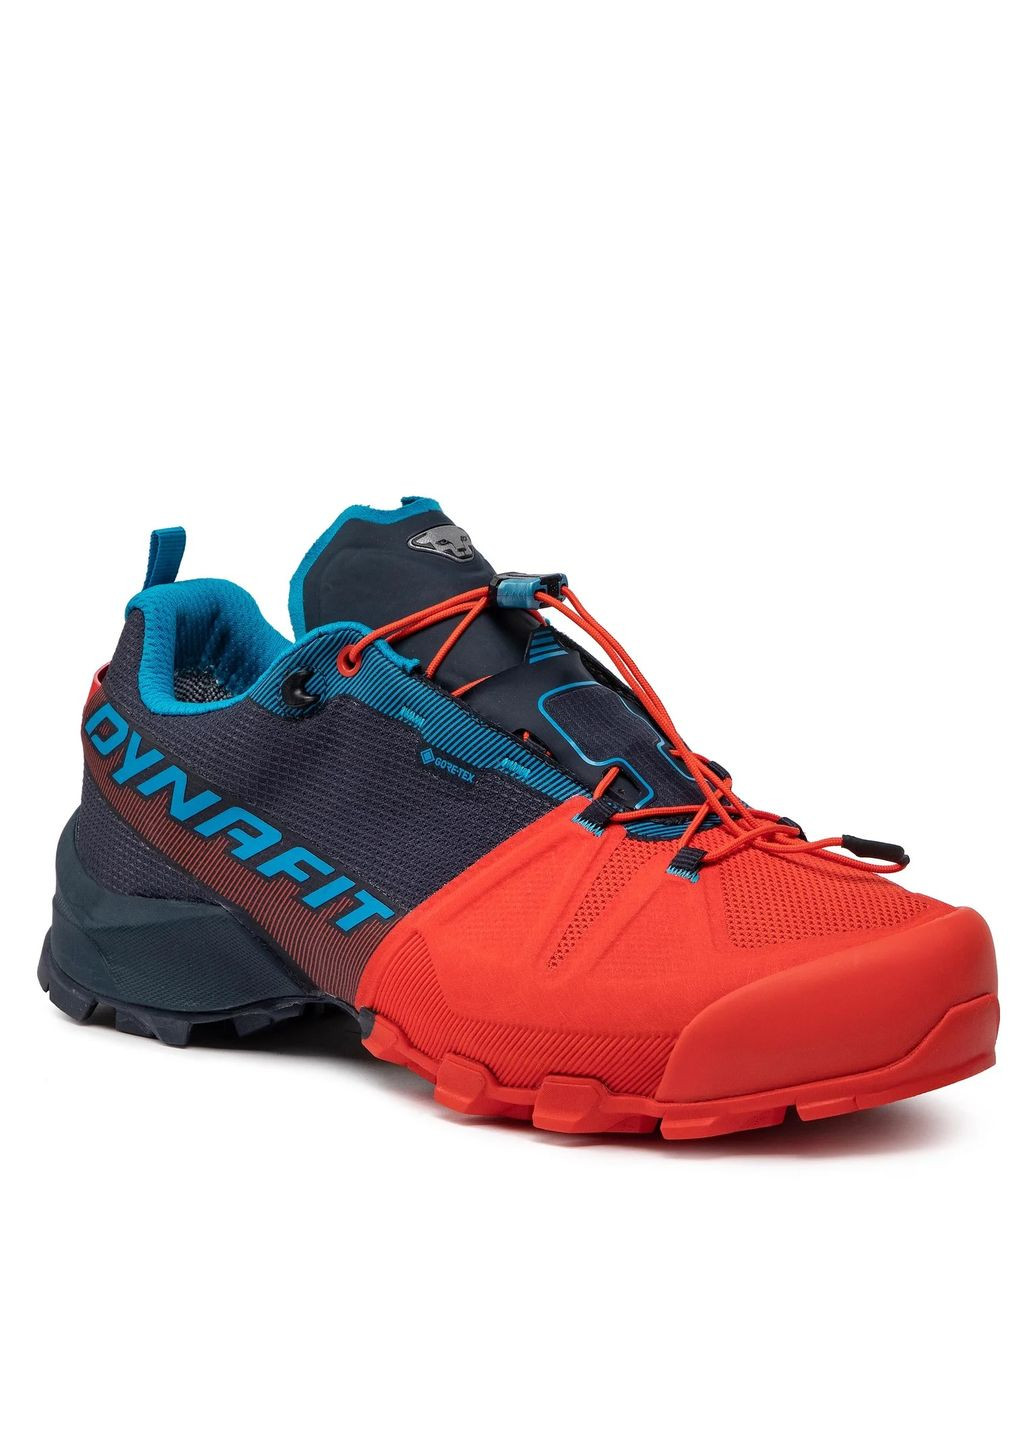 Цветные всесезонные кроссовки мужские transalper gtx синий-оранжевый Dynafit